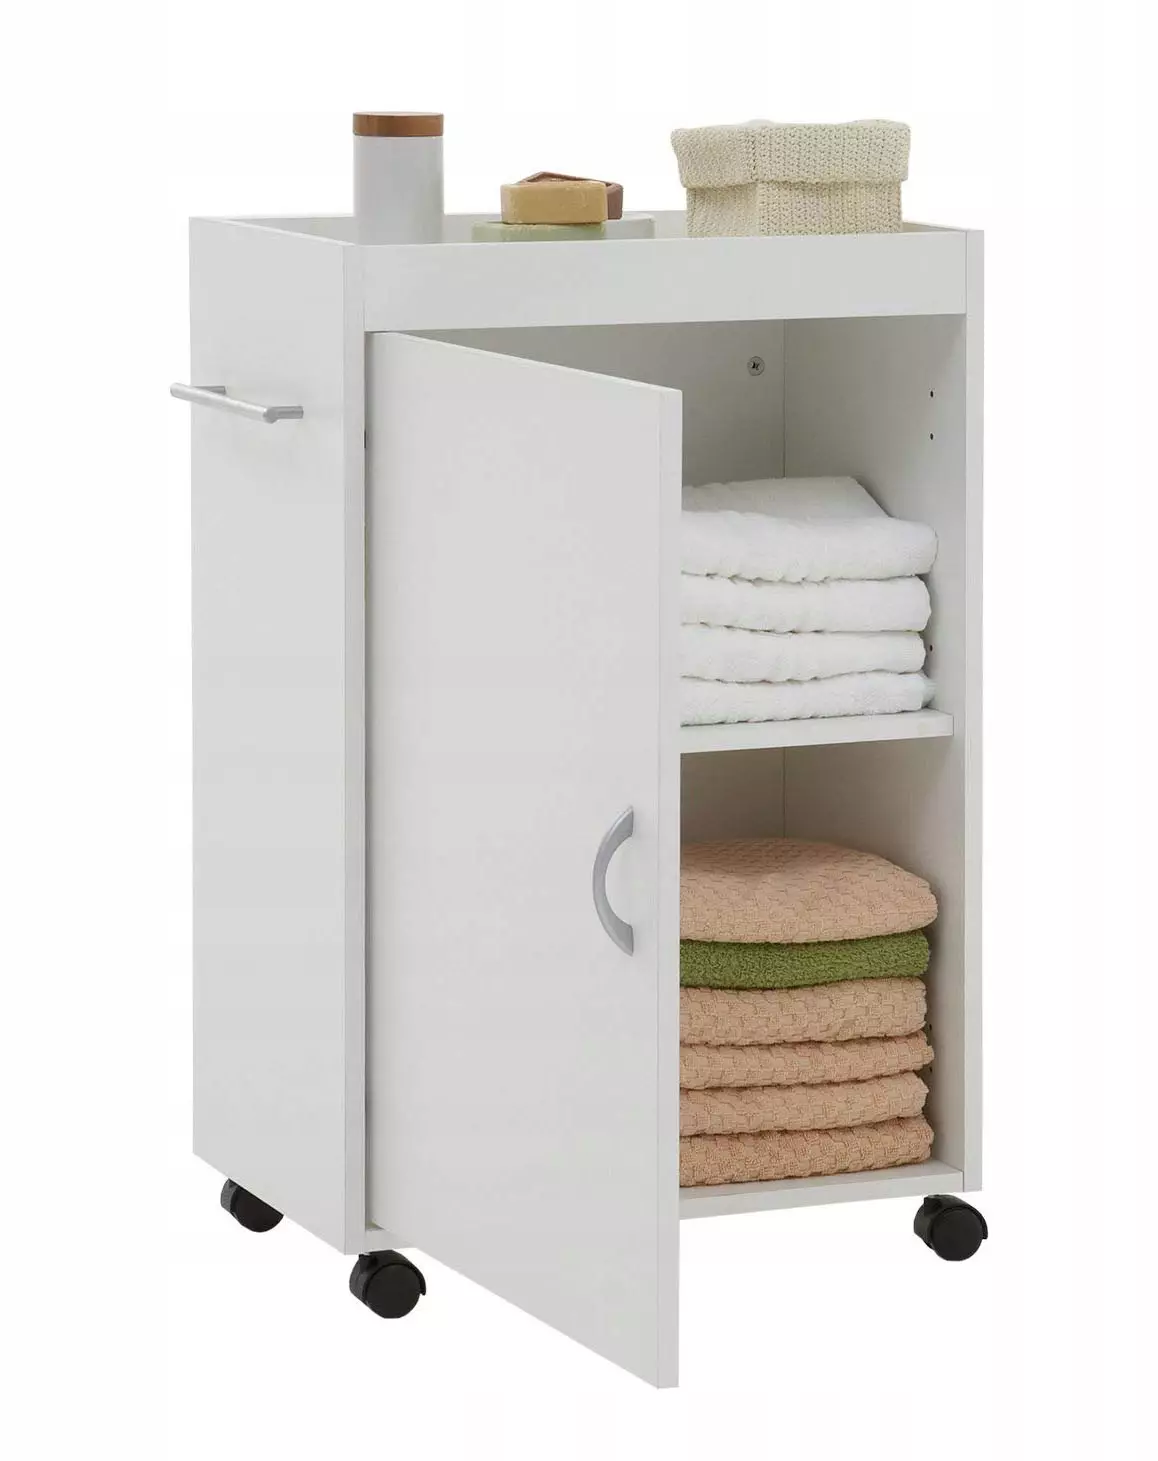 עיצוב אמבטיה בשילוב עם שירותים מרובע 3. M (76 תמונות): עיצוב פנים חדר אמבטיה עם מכונת כביסה, הנחת חדר קטן 10068_57